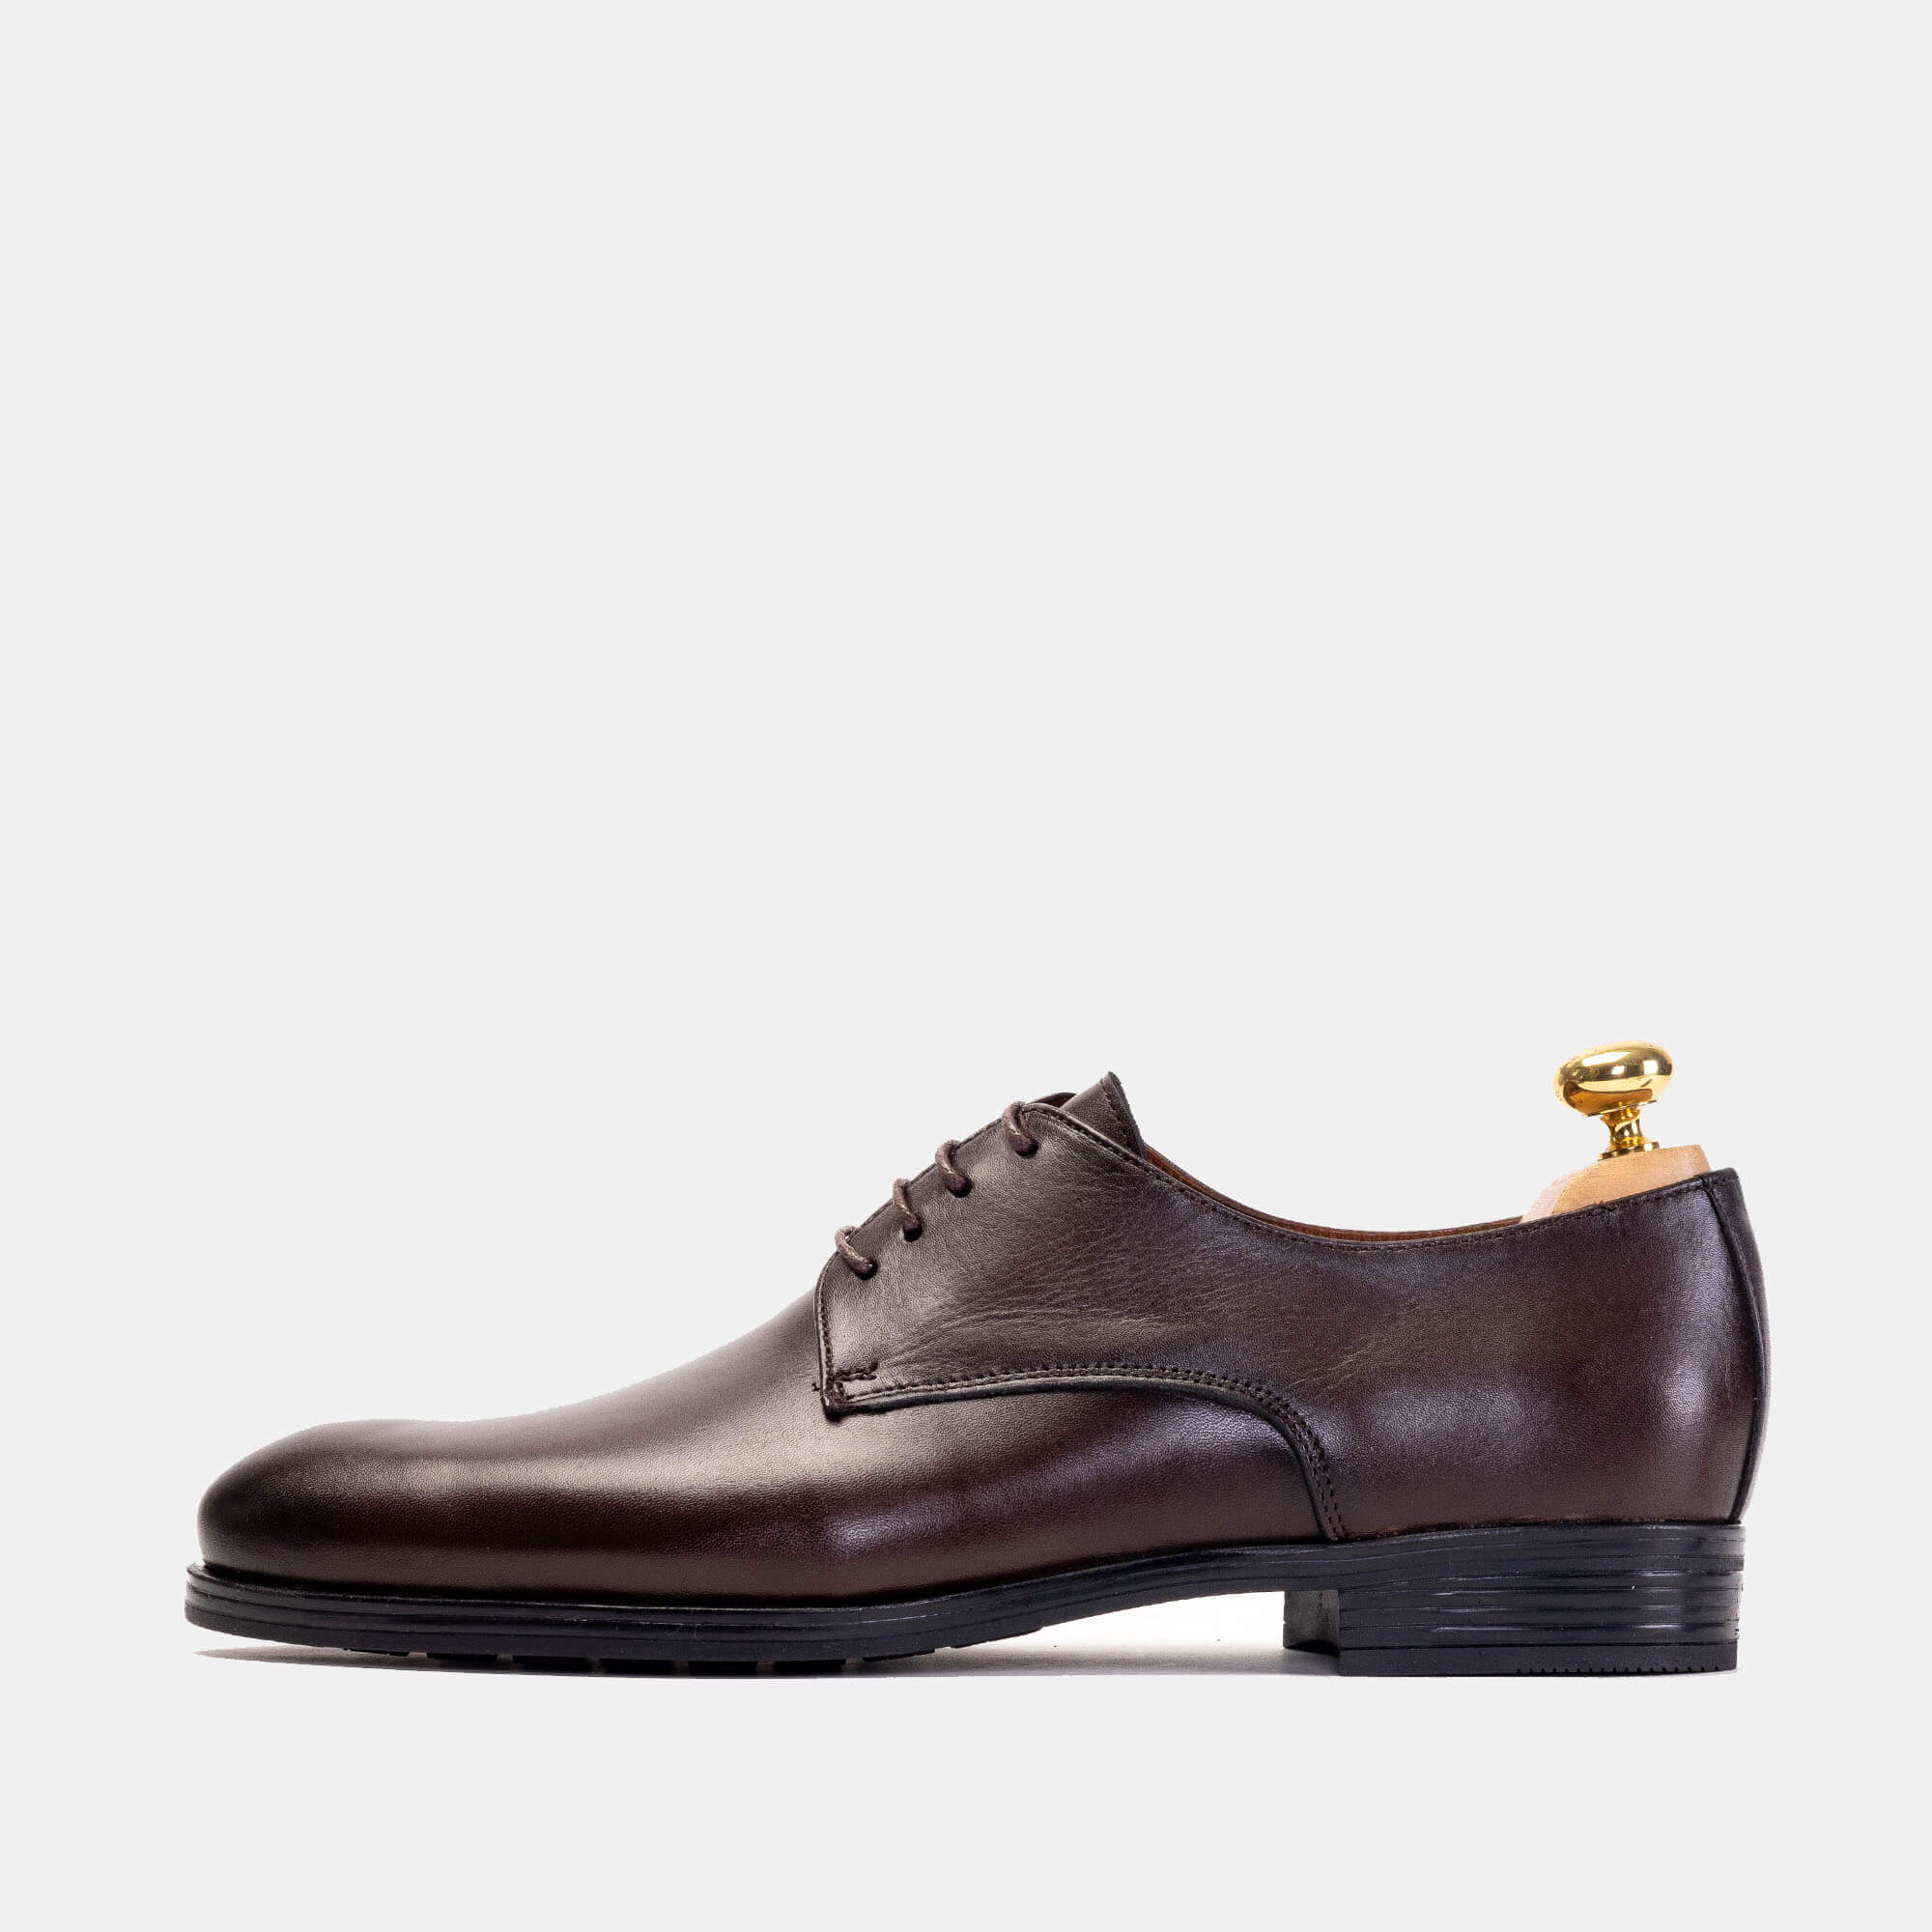 5122 Chaussure cuir Marron